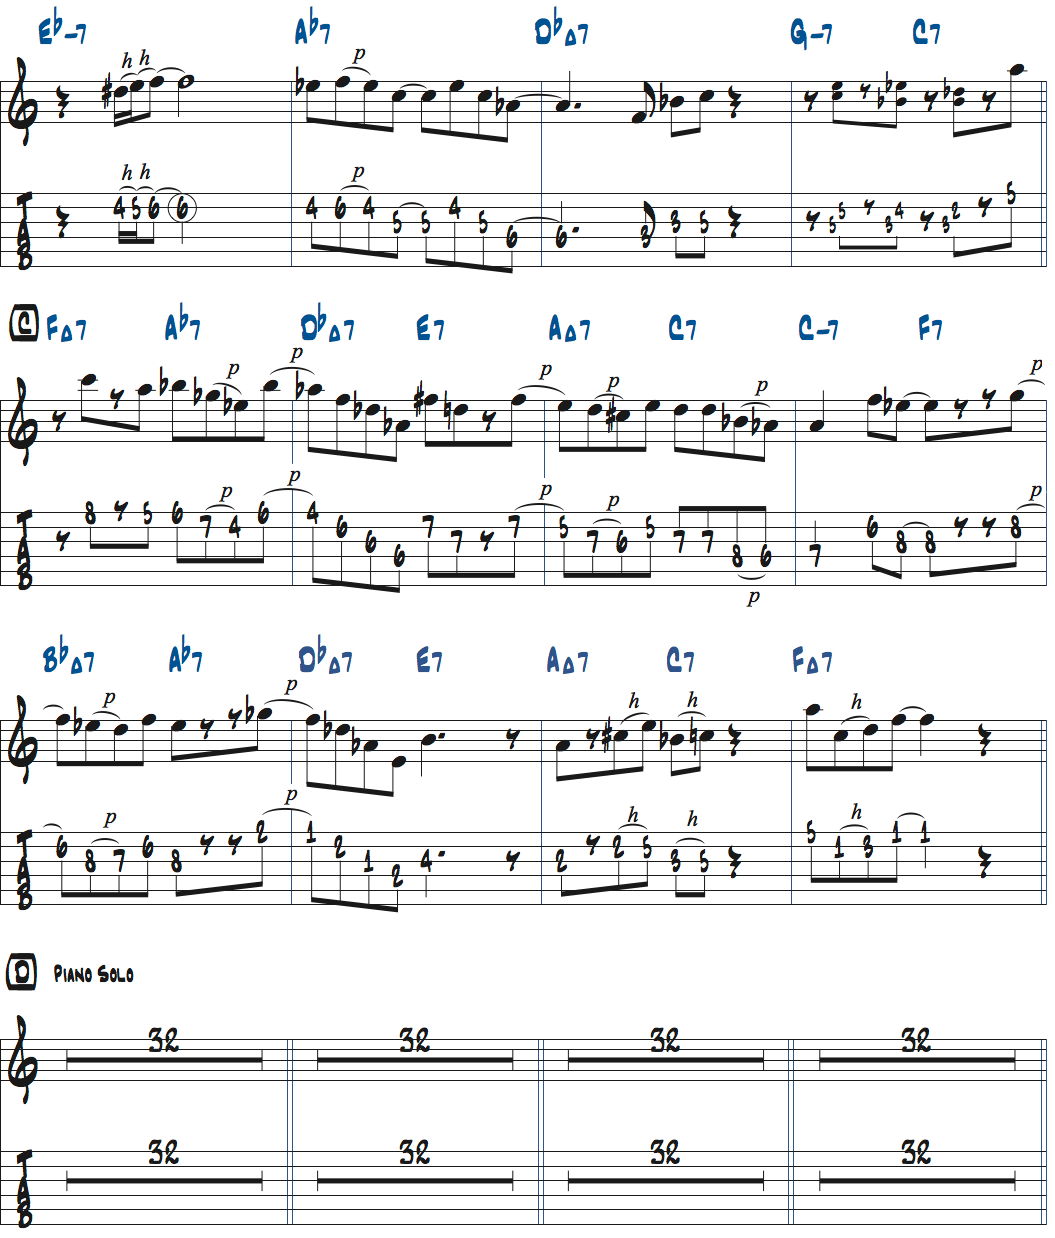 カート・ローゼンウィンケル「26-2」メロディタブ譜付きギタースコア楽譜ページ2